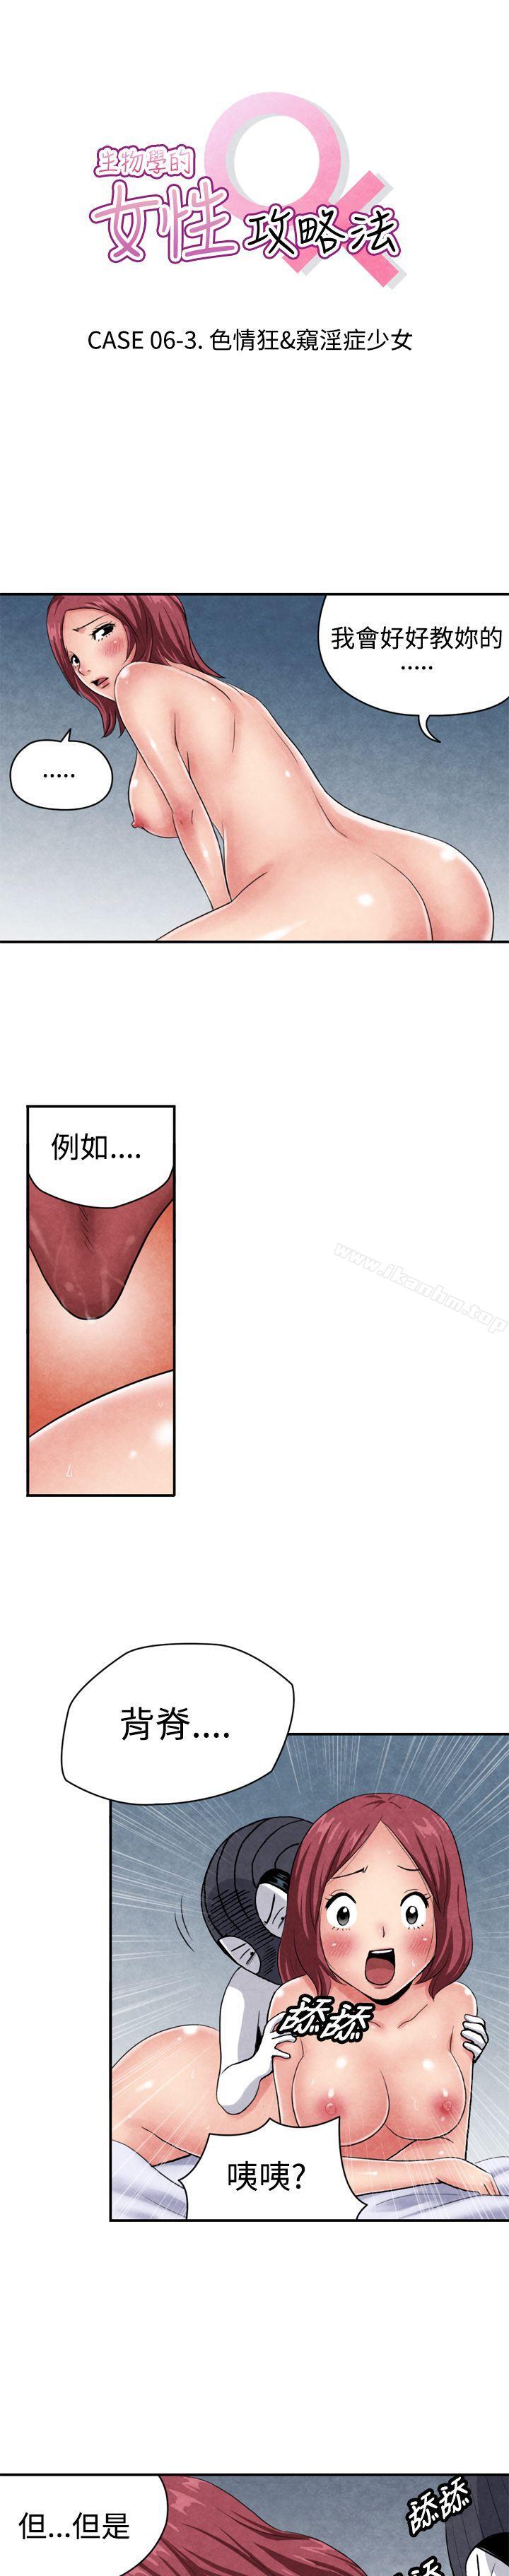 漫画韩国 生物學的女性攻略法   - 立即阅读 生物學的女性攻略法 CASE 06-3. 色情狂&窺淫癥少女第1漫画图片